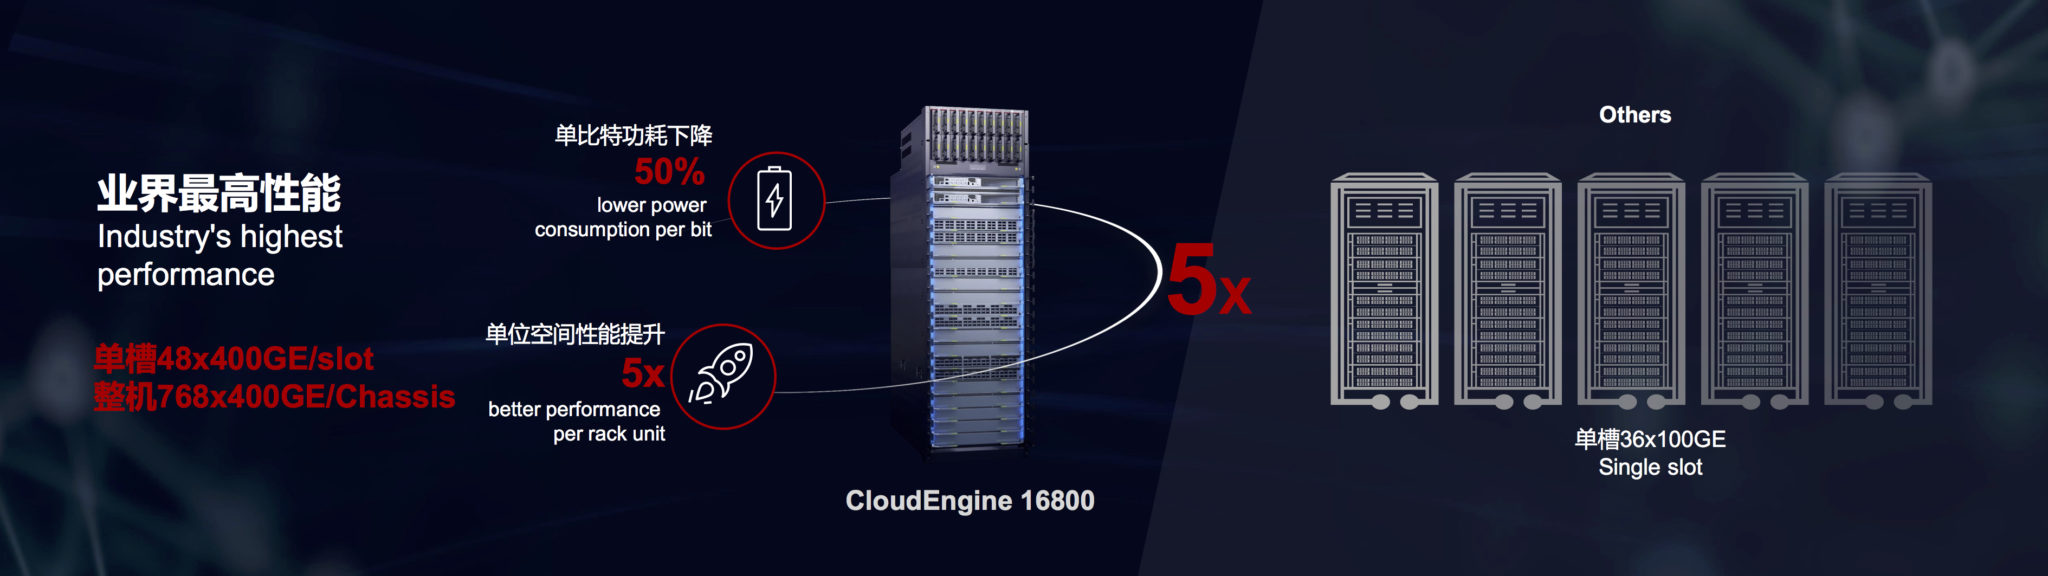 Huawei CloudEngine 16800 capabilities